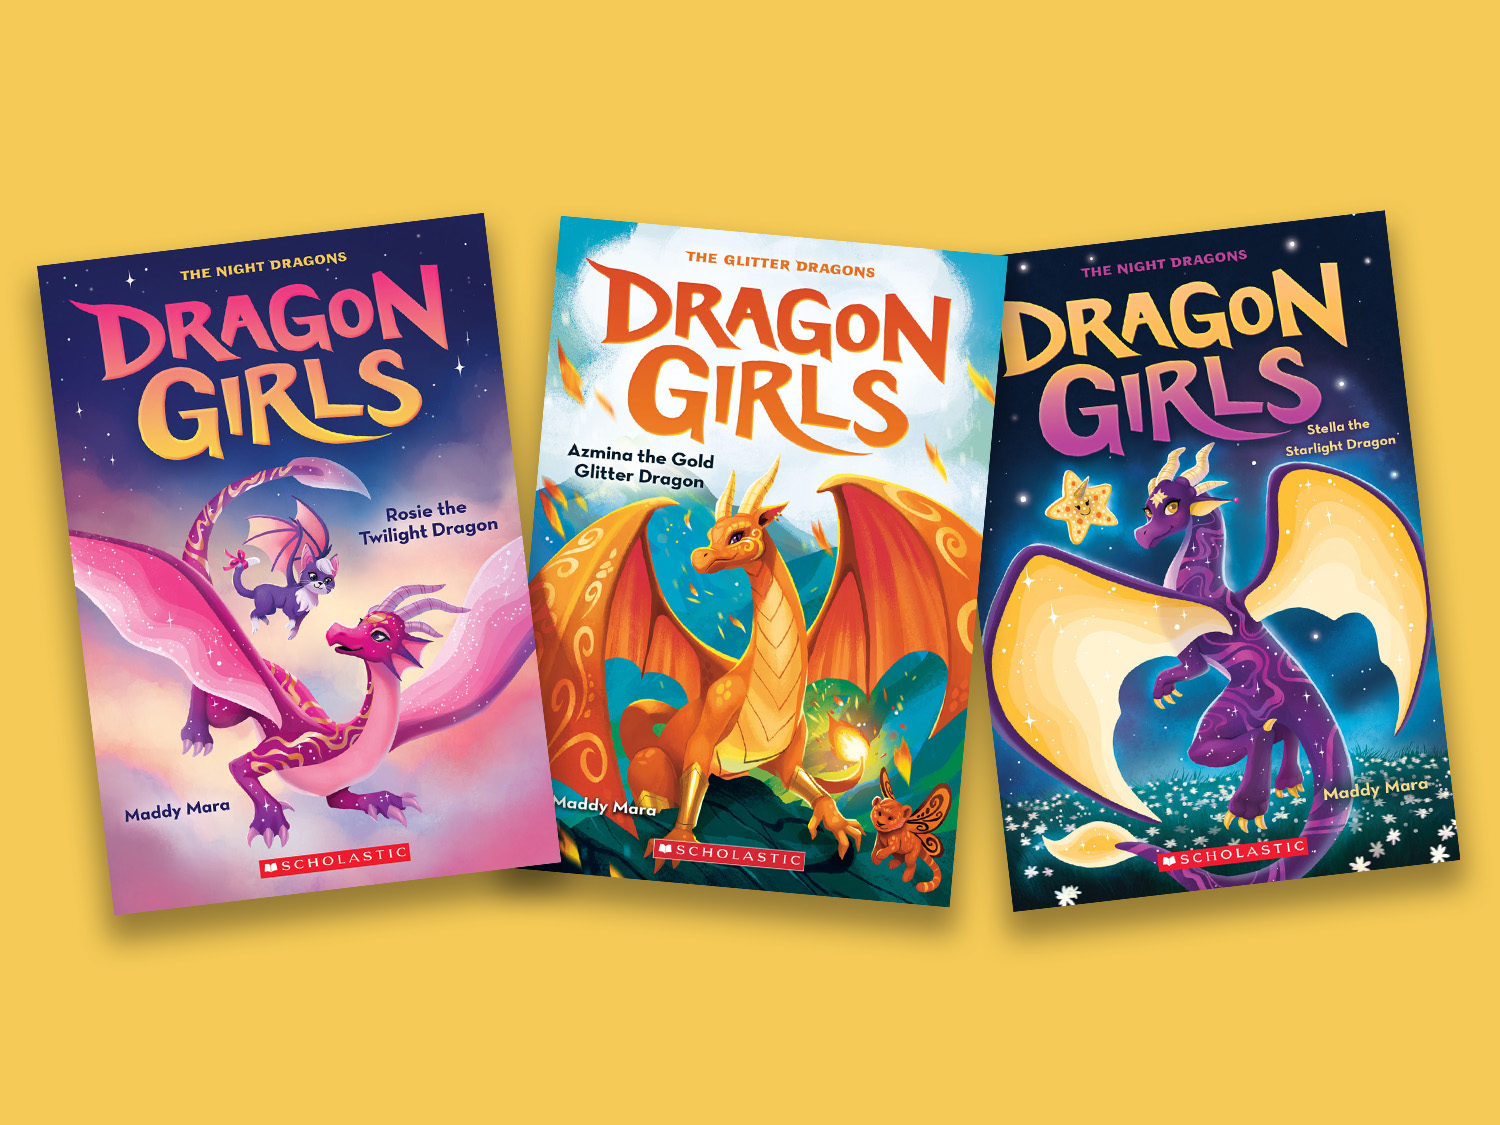 http://shop.scholastic.com/content/dam/parents/FeatureImages/book-lists/030623-dragon-girls-books-4-3.jpg